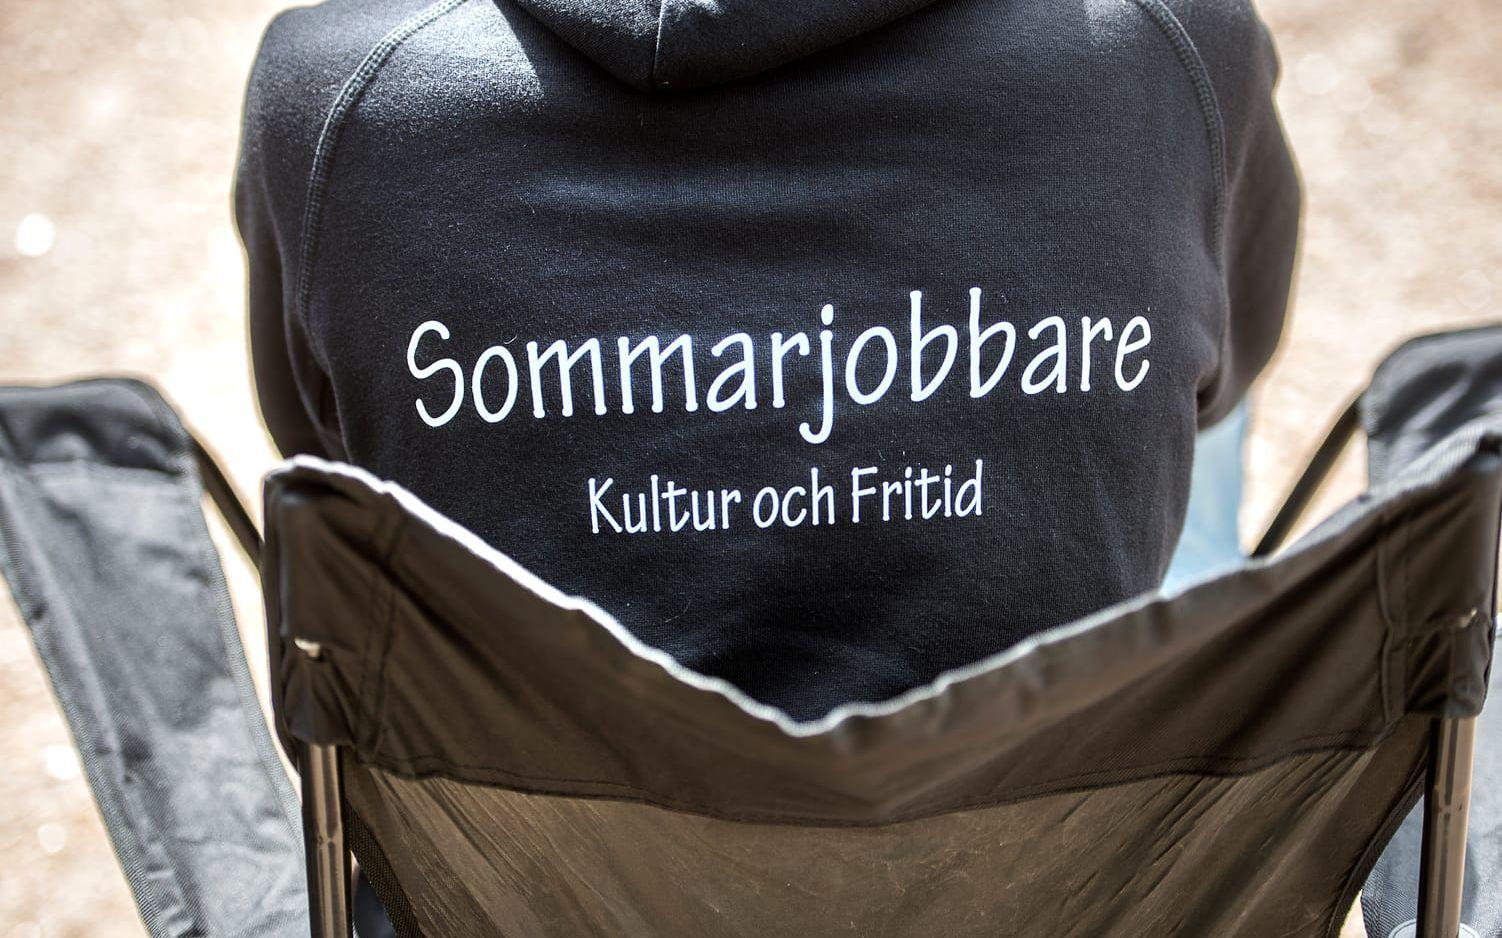 Sommarjobbarna i Vänersborgs kommuns regi har fått ha sådana här tröjor.